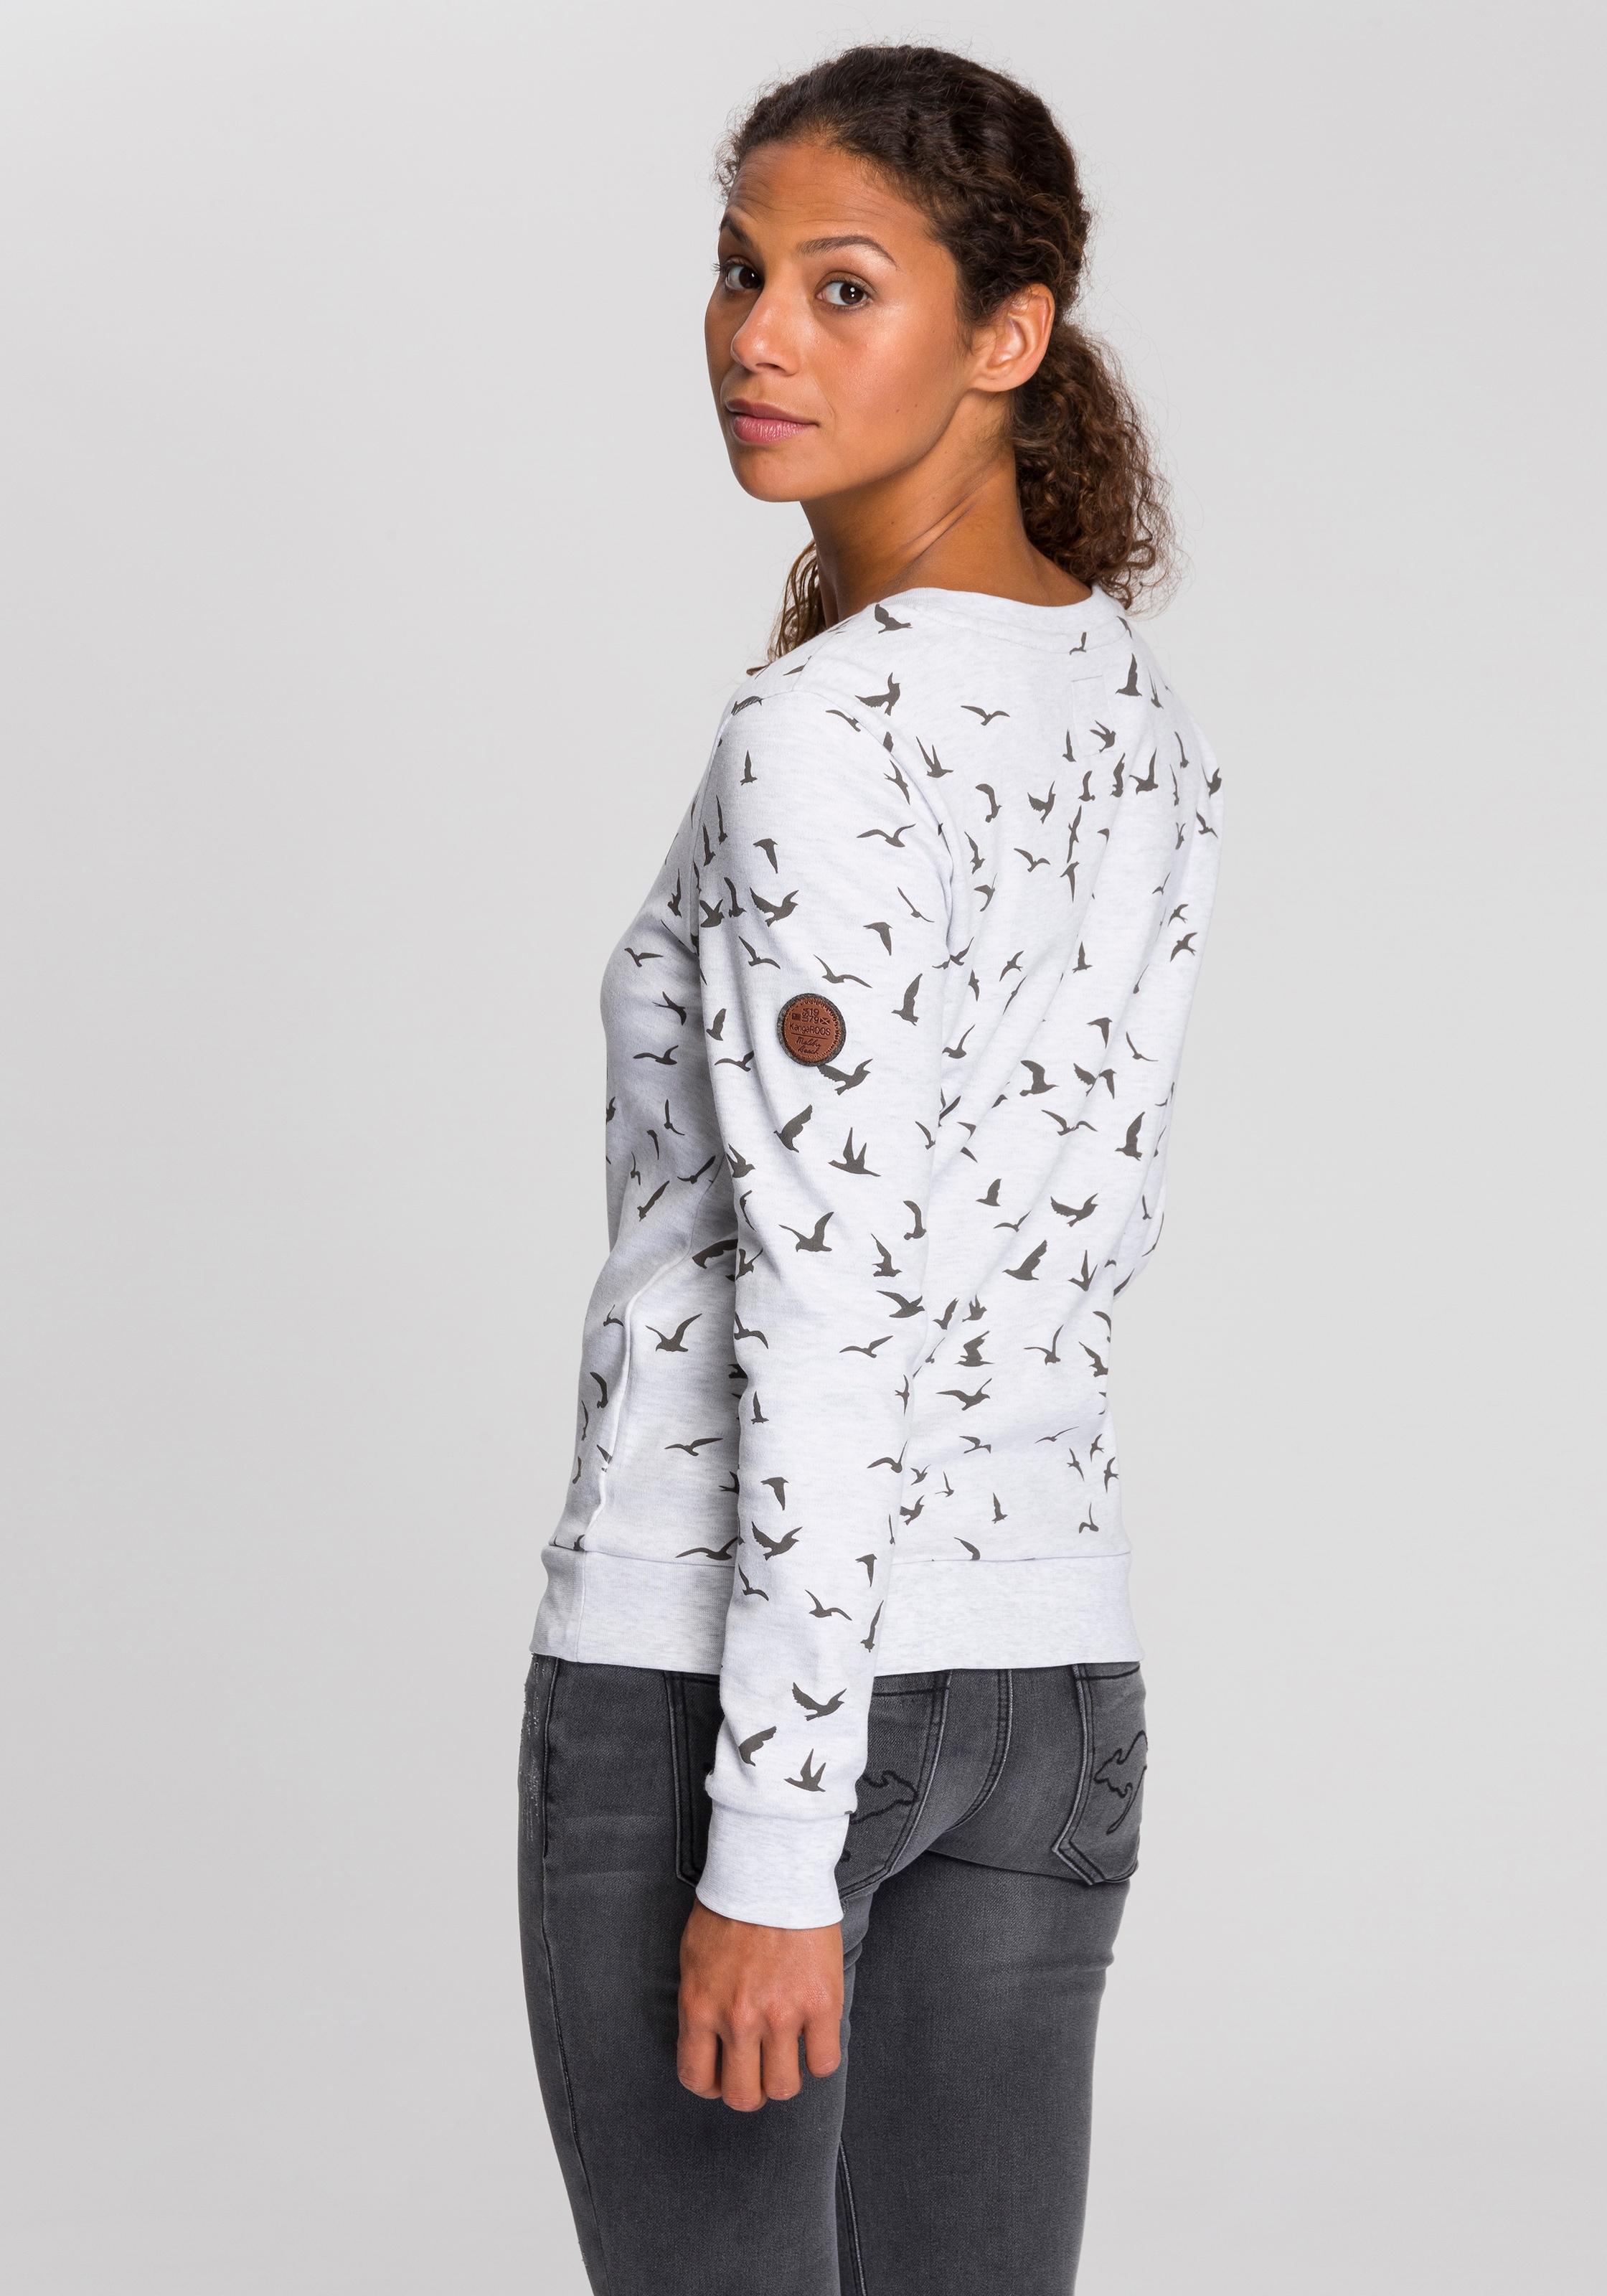 KangaROOS Minimal-Allover-Print bei modischem Sweatshirt, ♕ mit